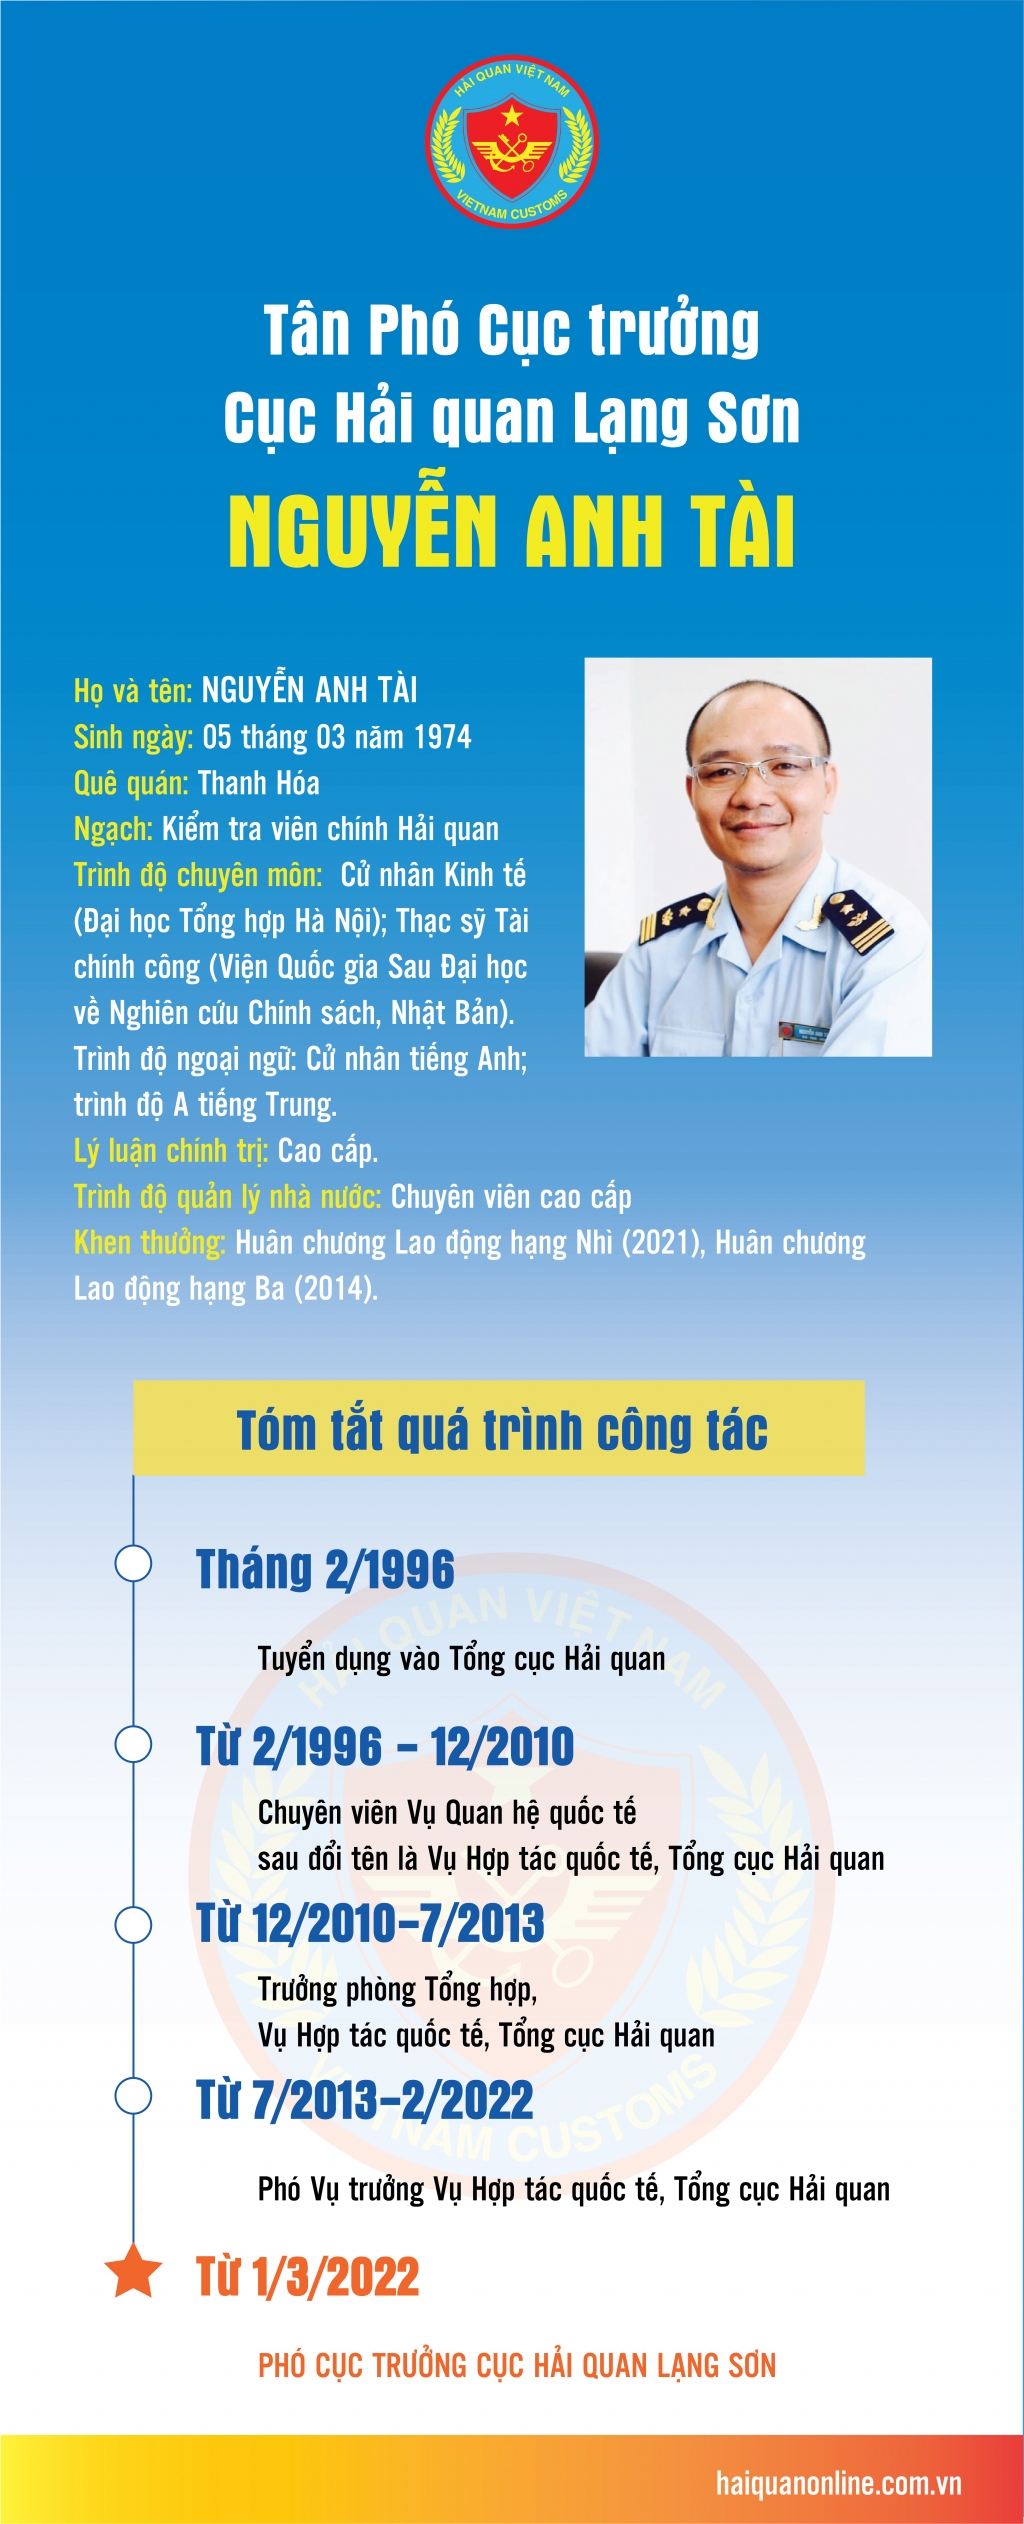 Quá trình công tác của tân Phó Cục trưởng Cục Hải quan Lạng Sơn Nguyễn Anh Tài